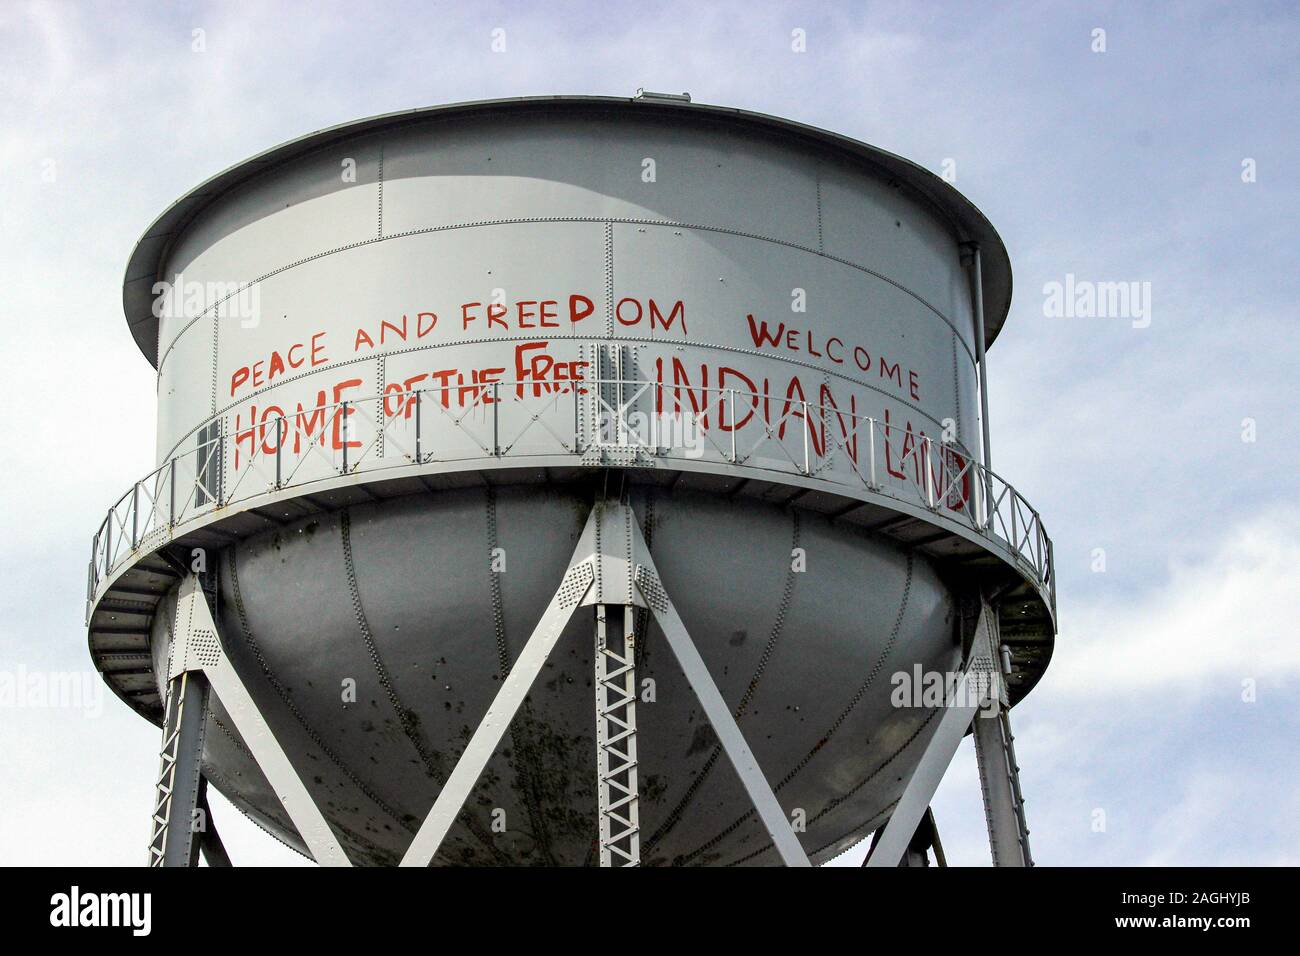 Conserves de graffitis sur tour de l'eau à partir de l'occupation de l'Île Alcatraz (1969-1970). Accueil de la libre des terres indiennes. San Francisco, États-Unis. Banque D'Images